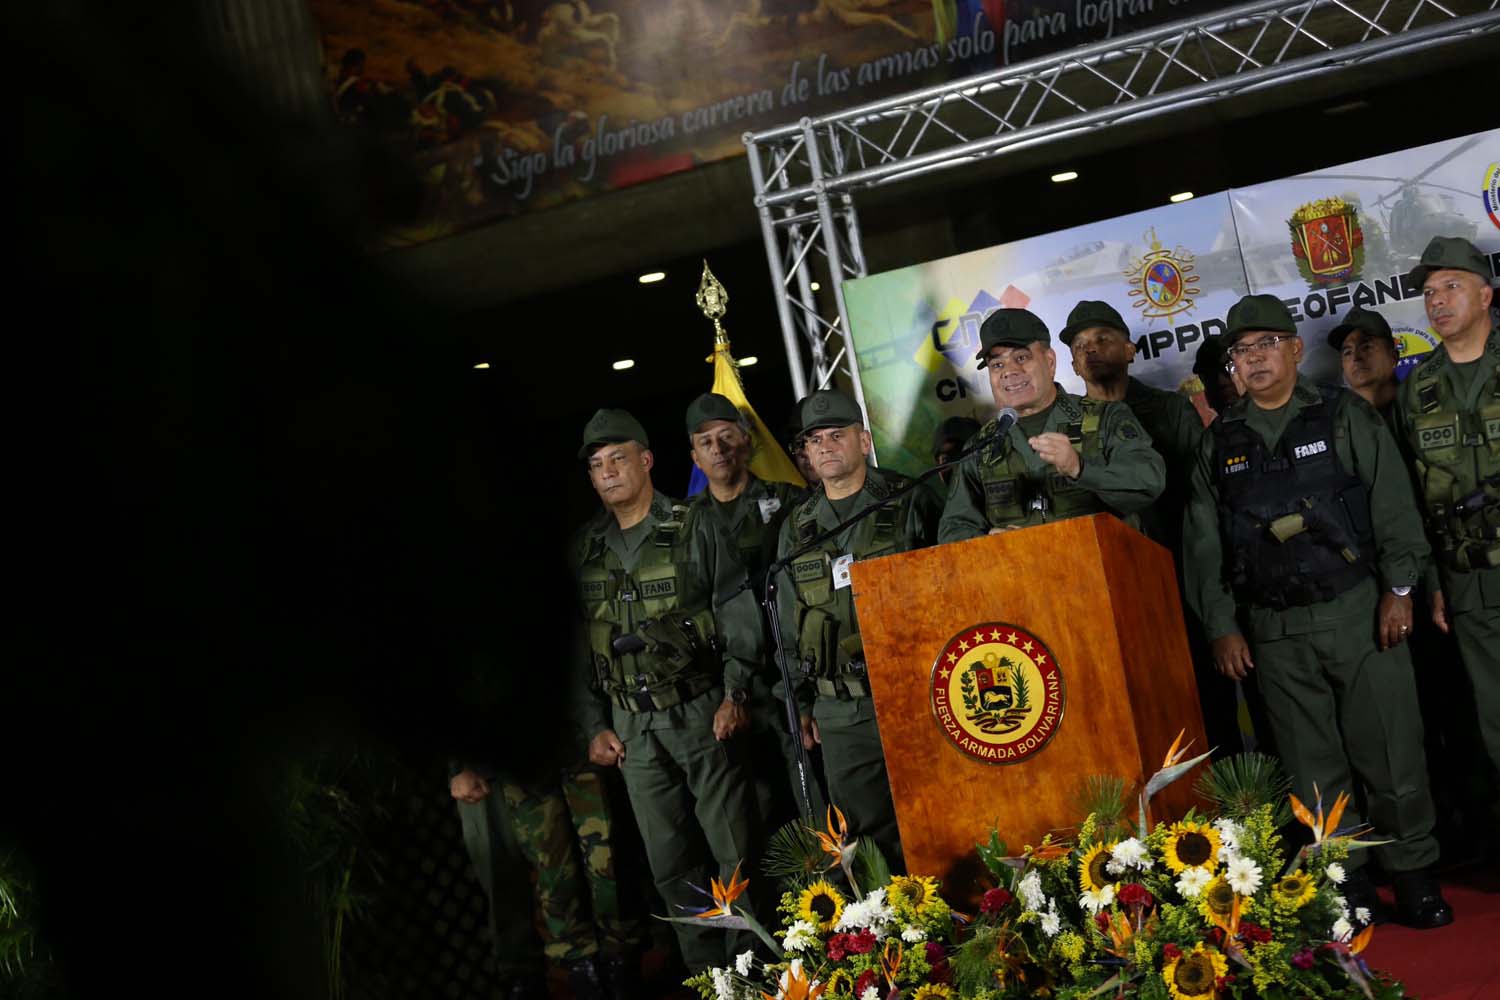 La Fuerza Armada declara “irrestricta lealtad” a Maduro tras supuesto atentado (comunicado)